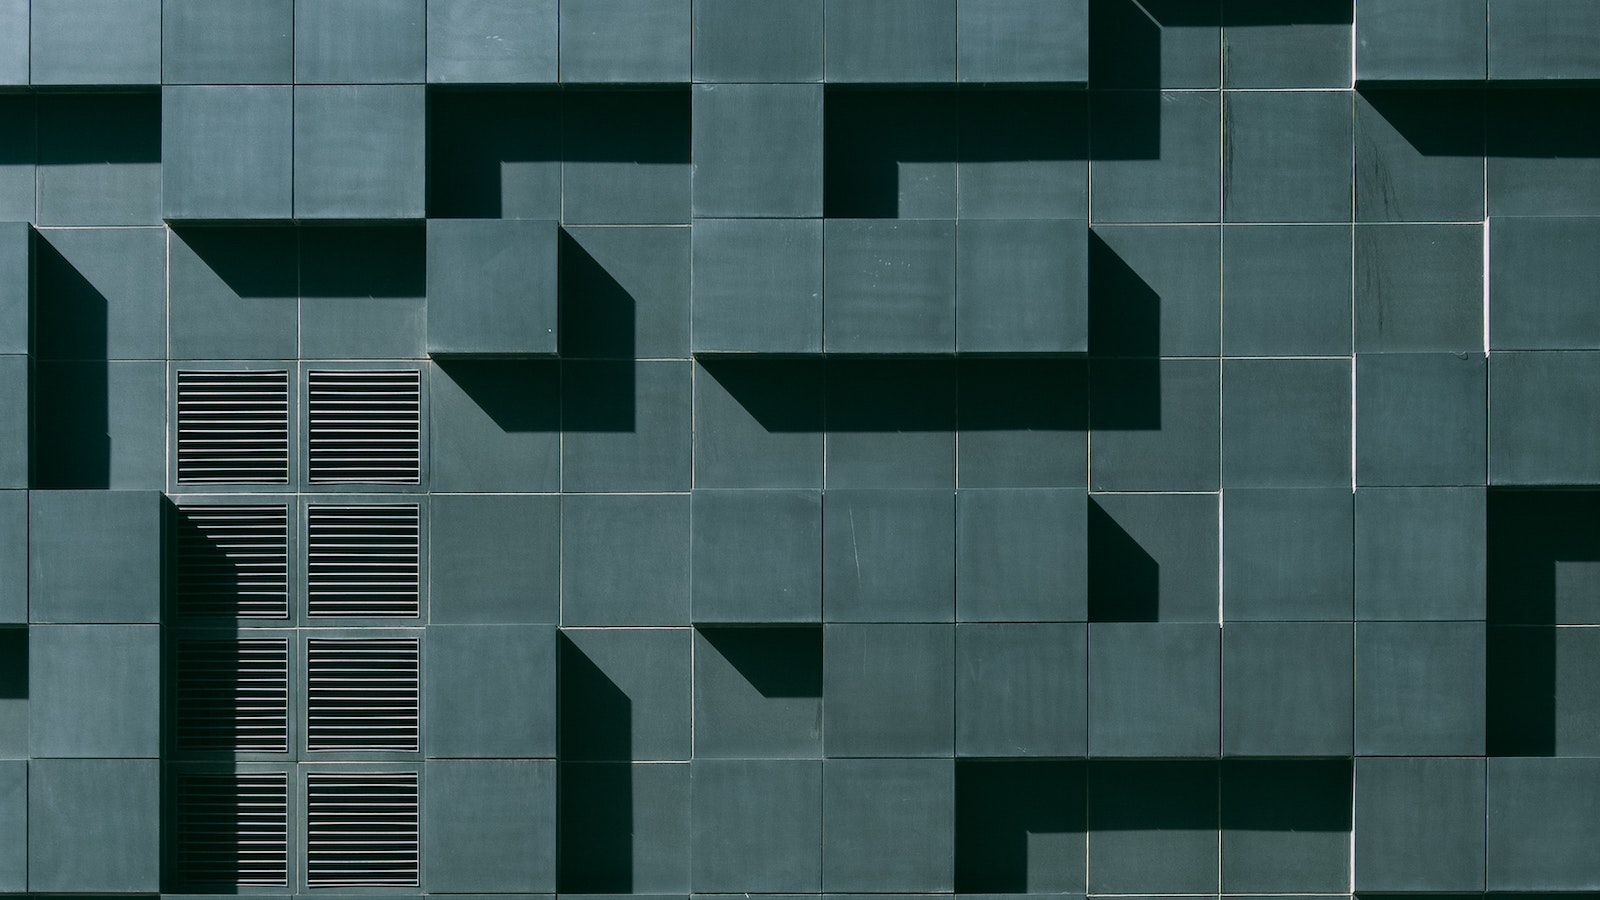 Blue-green wall in a grid pattern